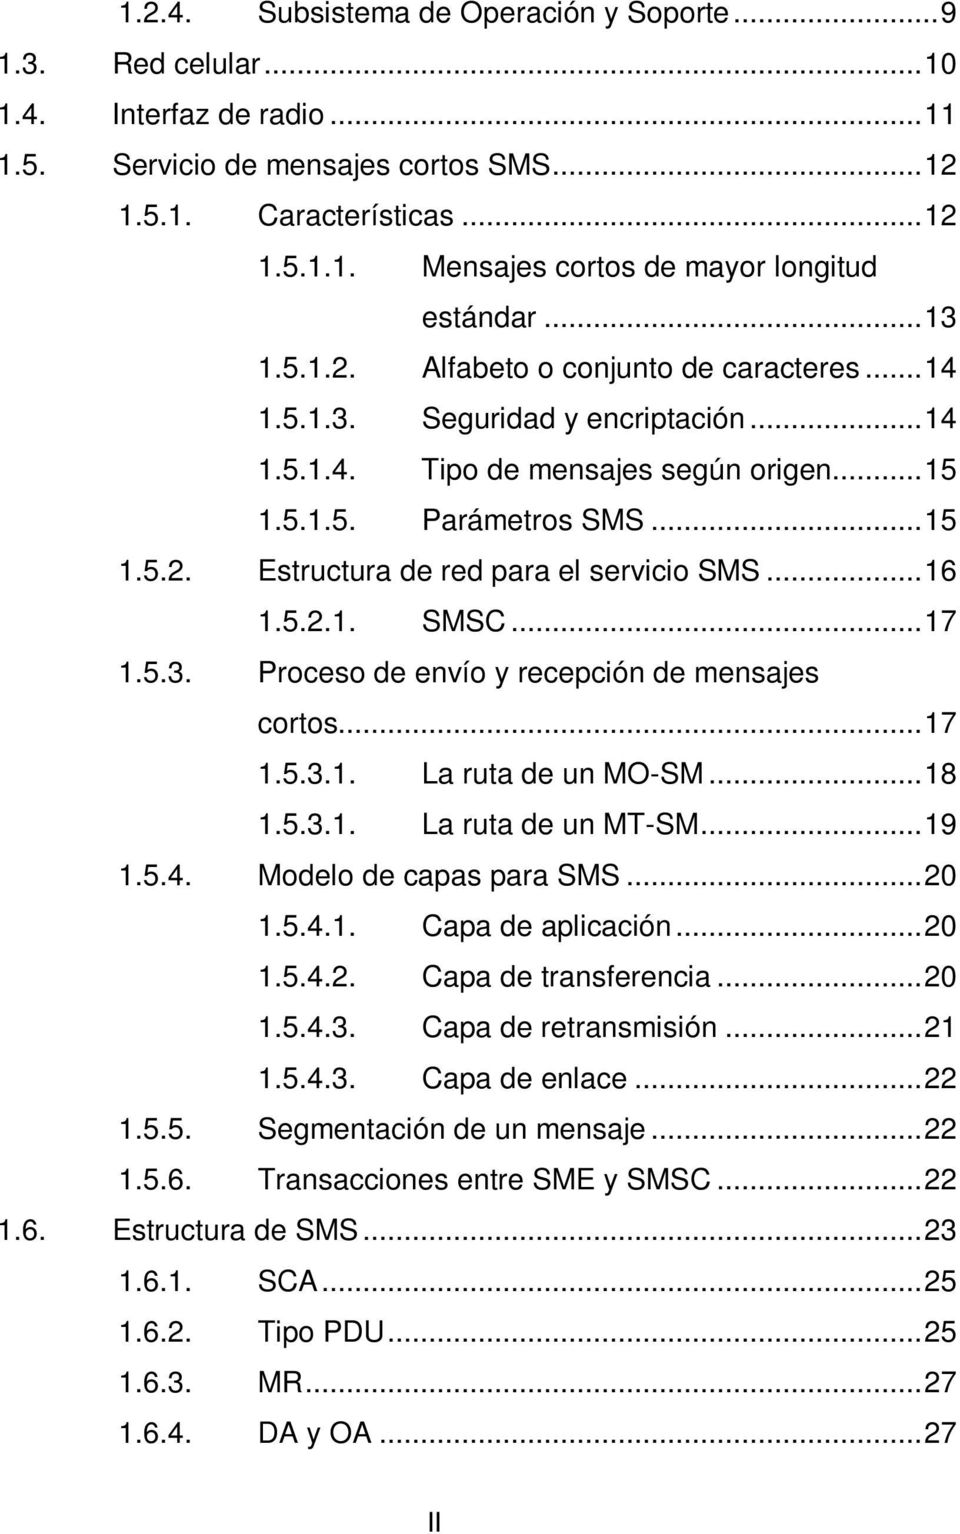 .. 16 1.5.2.1. SMSC... 17 1.5.3. Proceso de envío y recepción de mensajes cortos... 17 1.5.3.1. La ruta de un MO-SM... 18 1.5.3.1. La ruta de un MT-SM... 19 1.5.4. Modelo de capas para SMS... 20 1.5.4.1. Capa de aplicación.